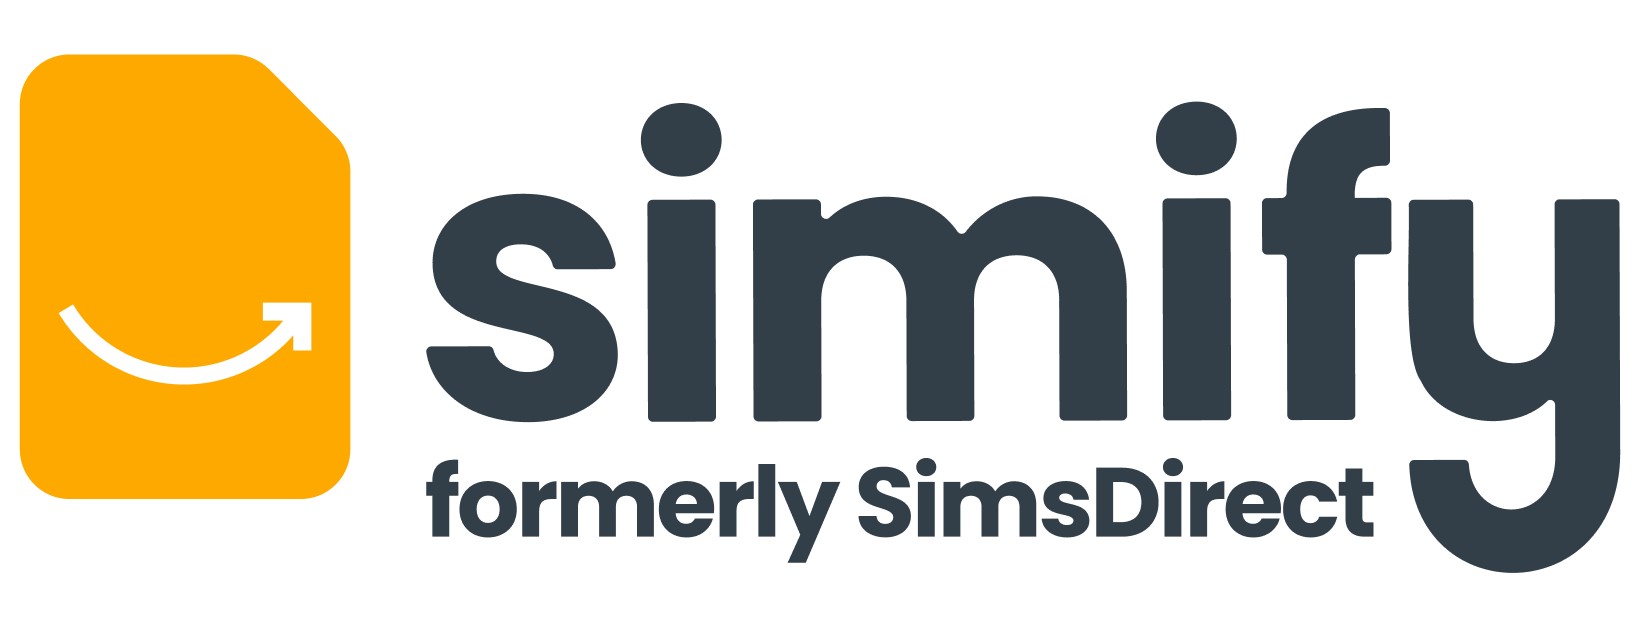 SimsDirect aka Simify logo